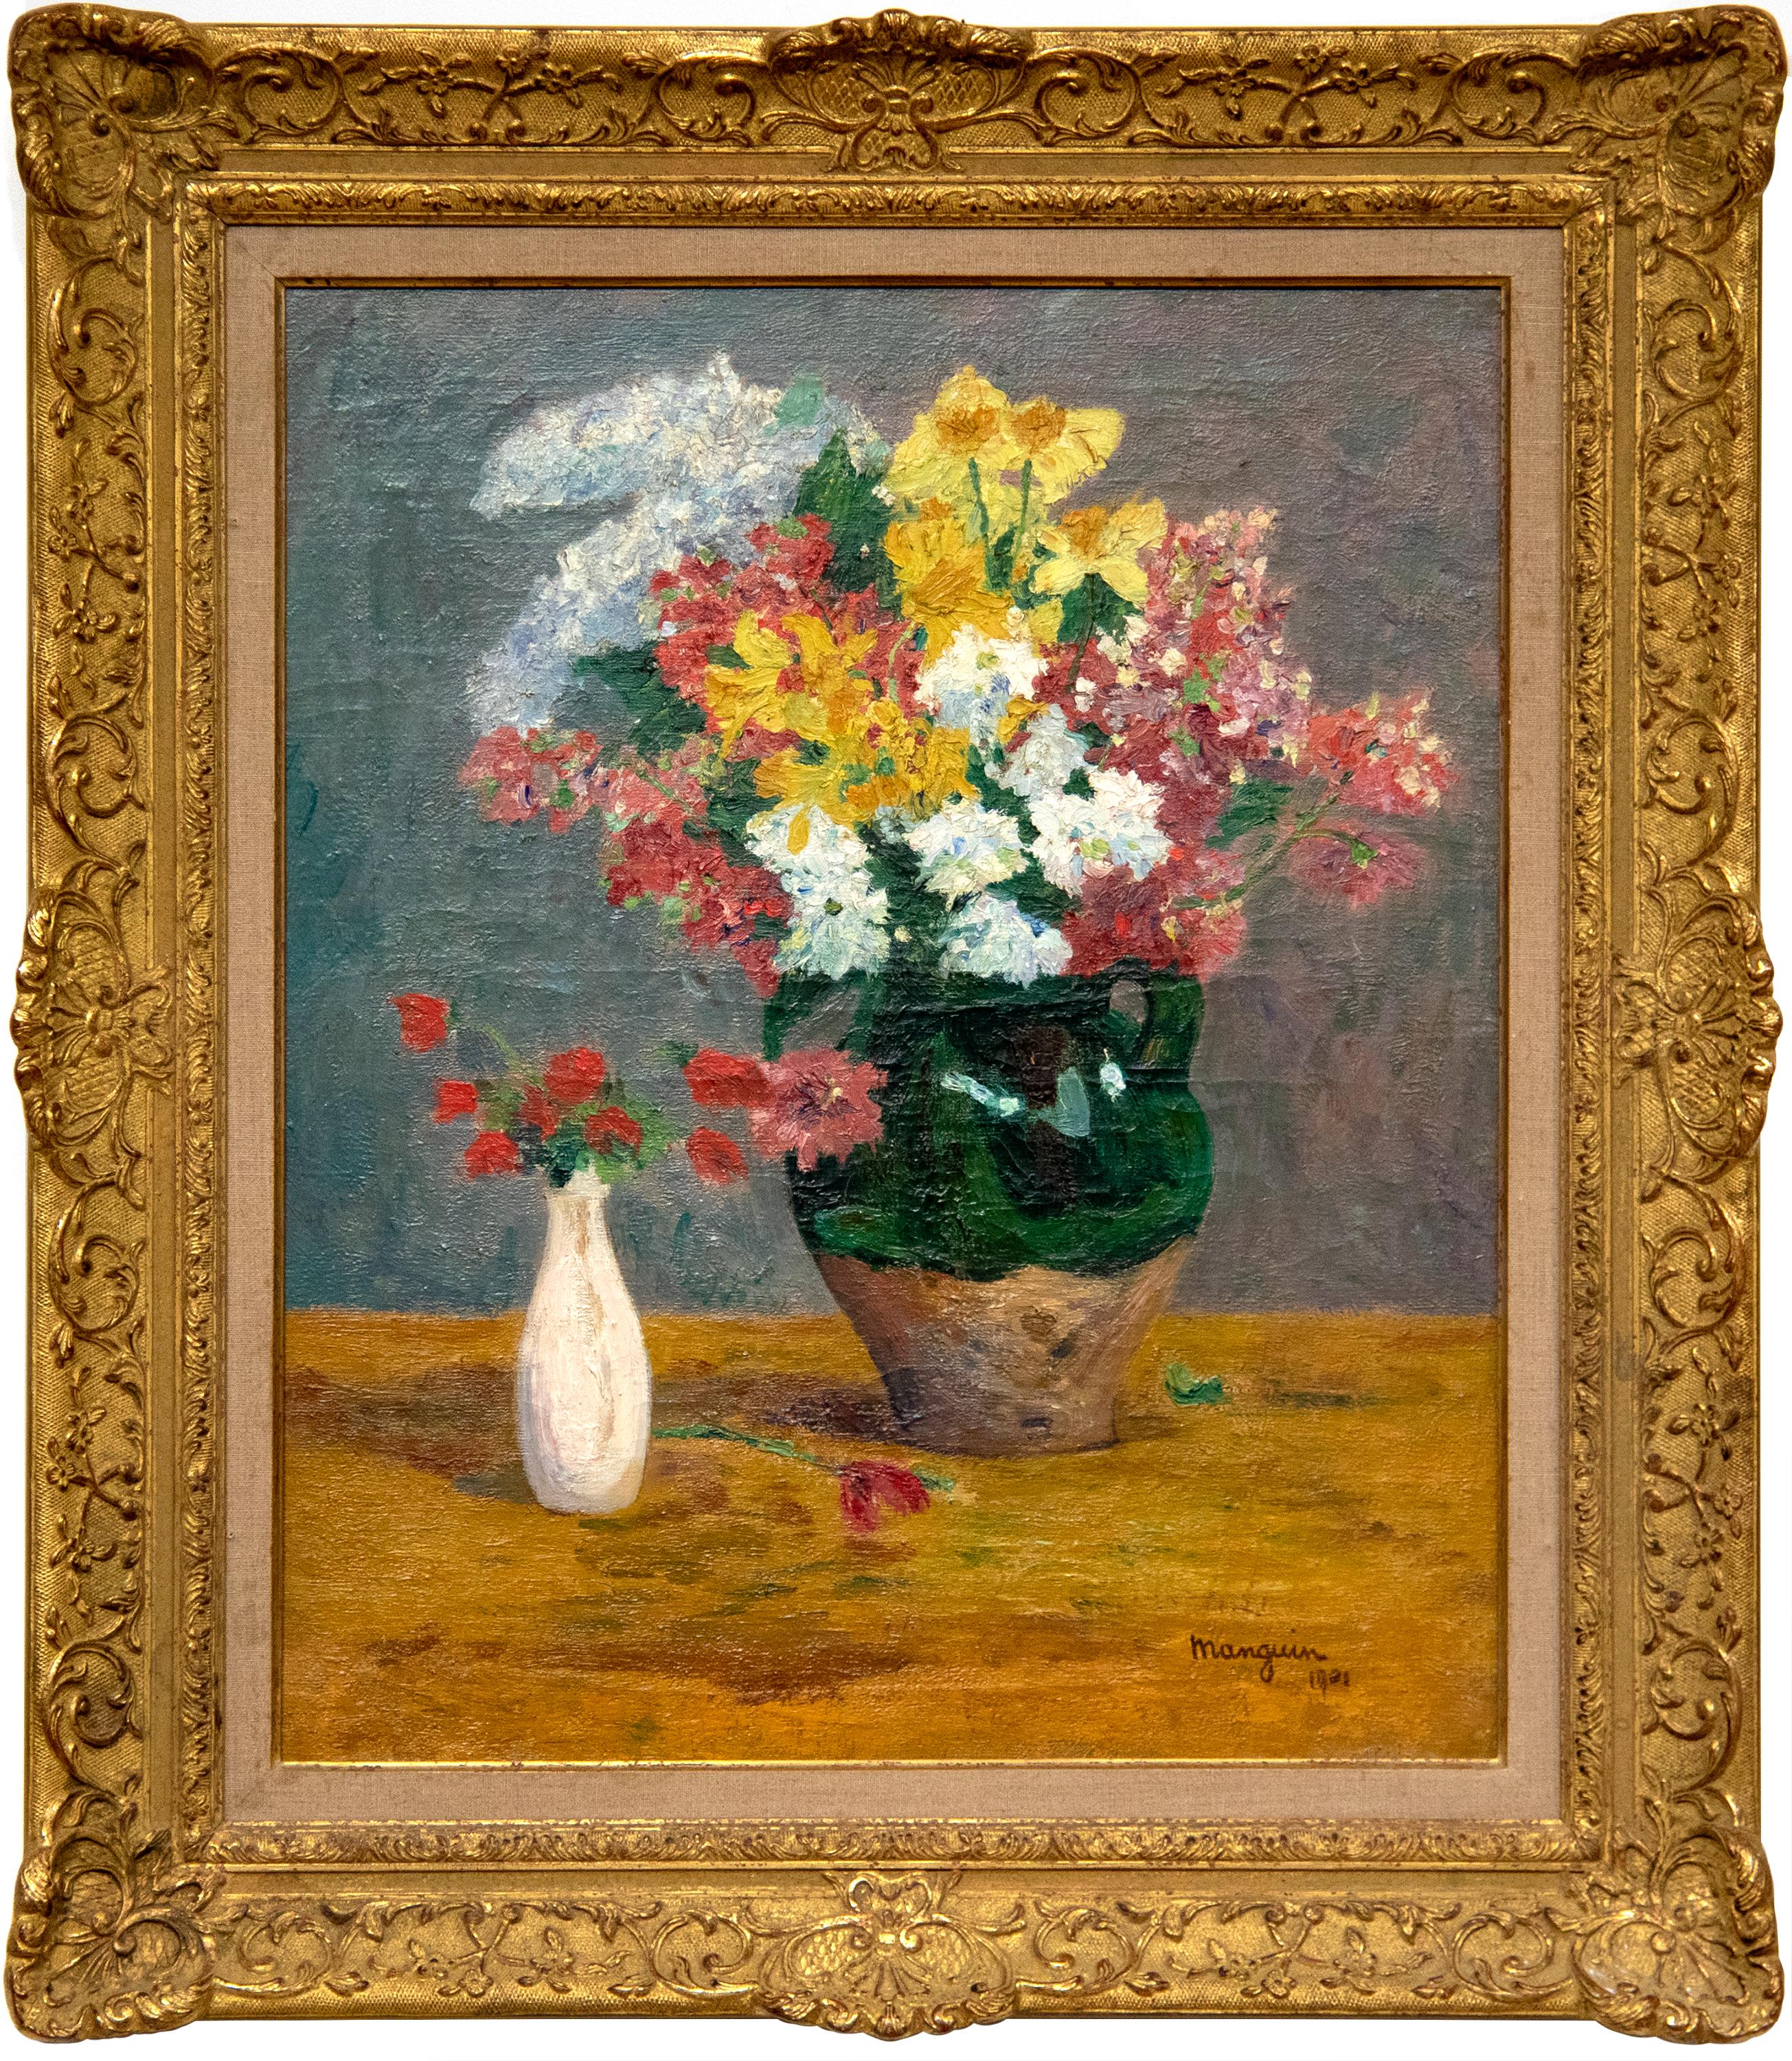 Bouquets de fleurs (Bouquet of Flowers) - Painting by Henri Manguin